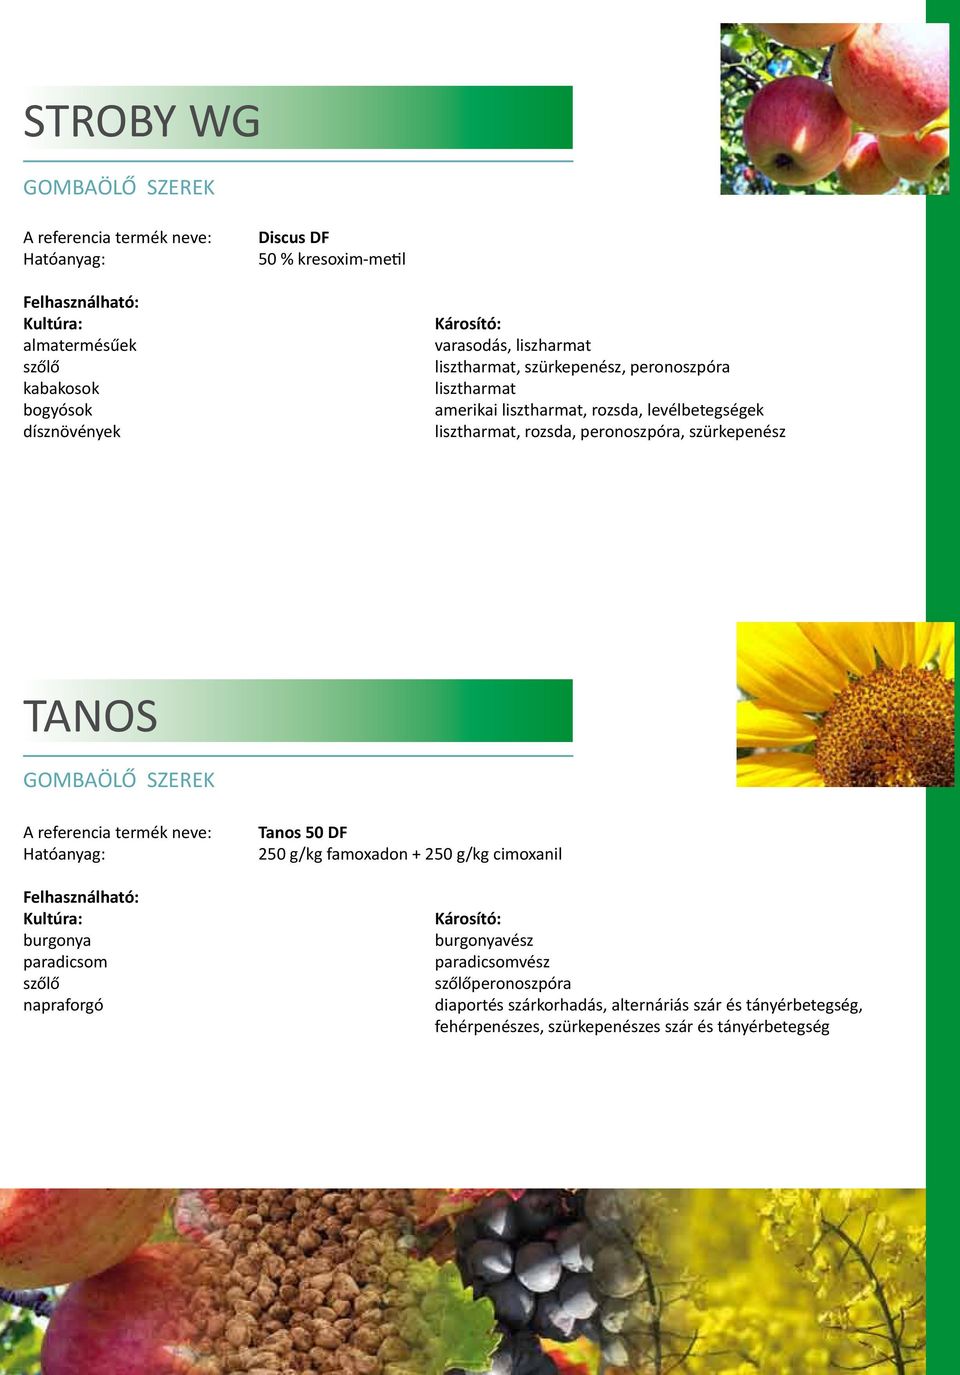 szürkepenész TANOS burgonya paradicsom napraforgó Tanos 50 DF 250 g/kg famoxadon + 250 g/kg cimoxanil burgonyavész